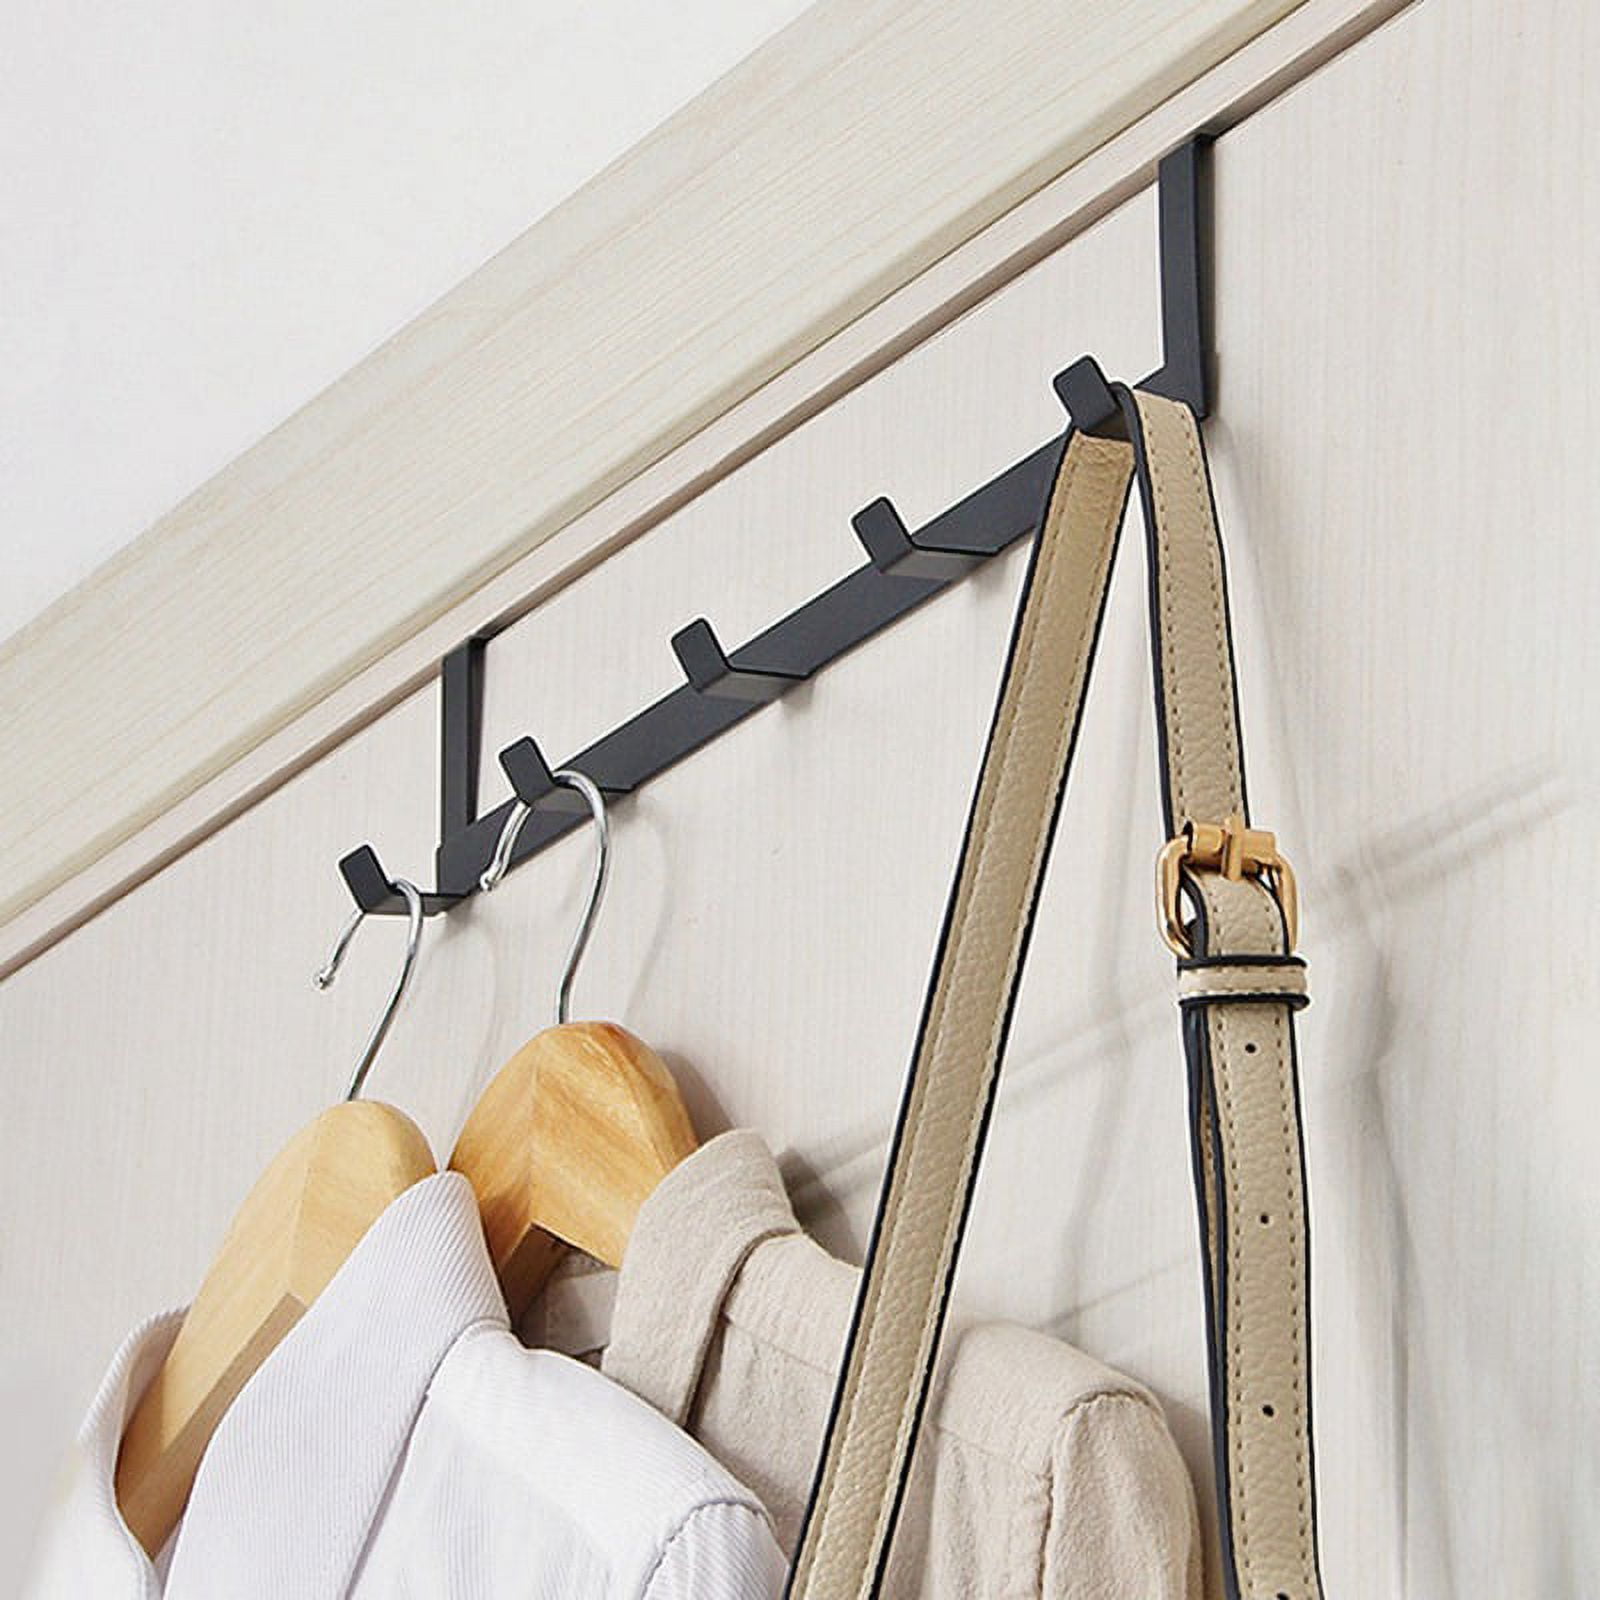 MISSLO 10 Pack Metal Over The Door Hook for Hanging Towels Rack Heavy Duty  Door Hanger Organizer for Hang Clothes Coats in Bathroom Bedroom